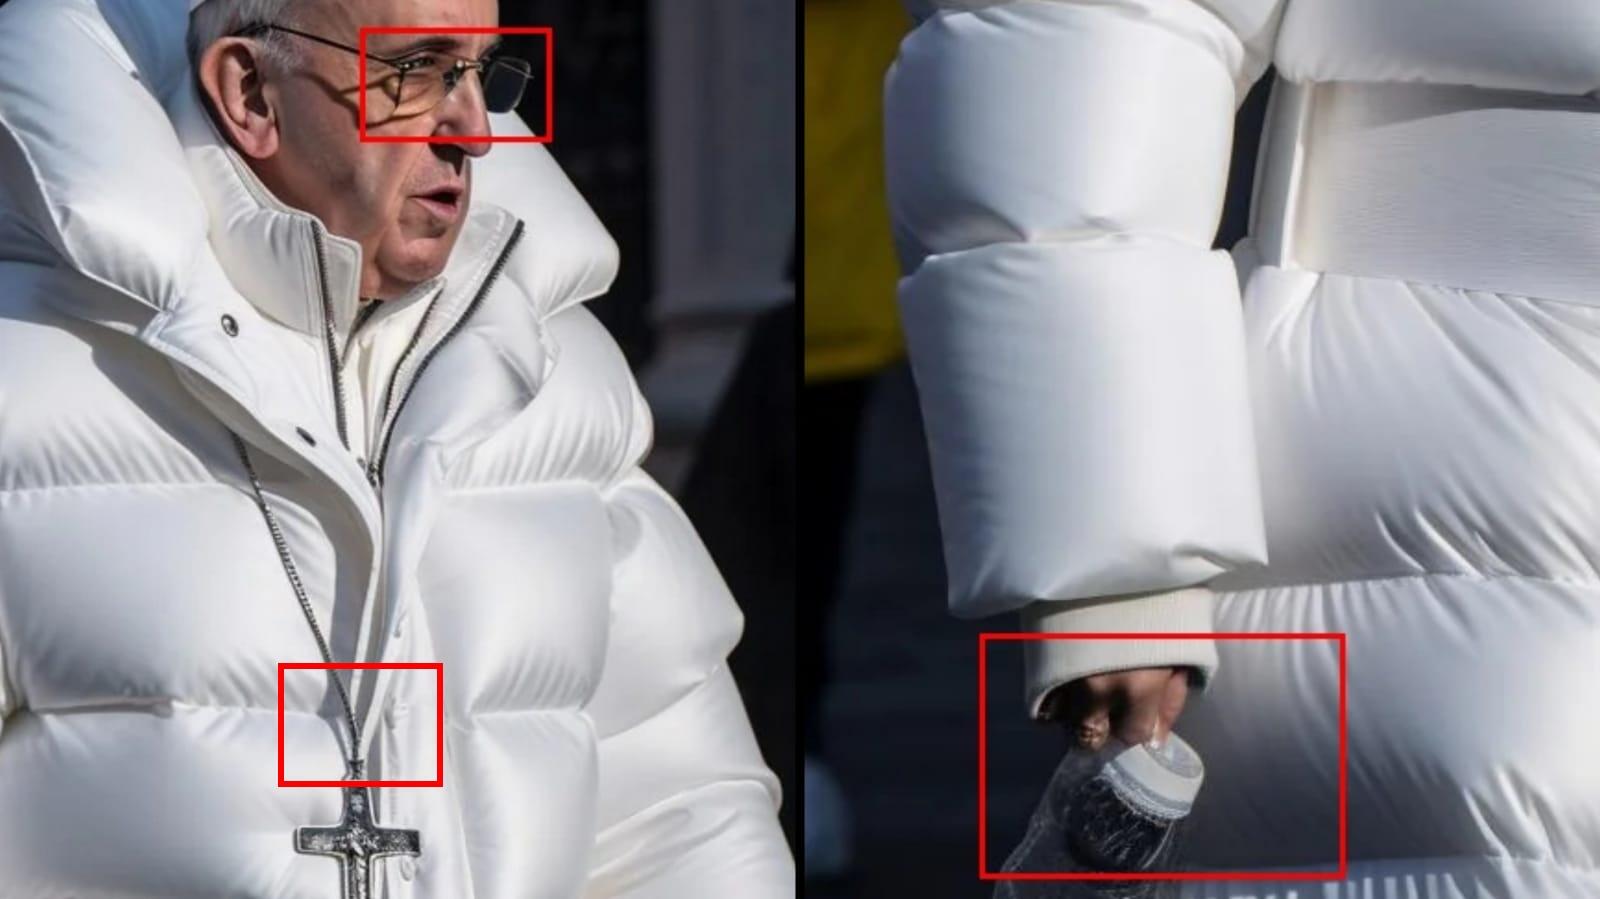 magem mostra inconsistências na foto do Papa Francisco que revelam criação artificial, tais como lentes de óculos tortas e mãos distorcidas.